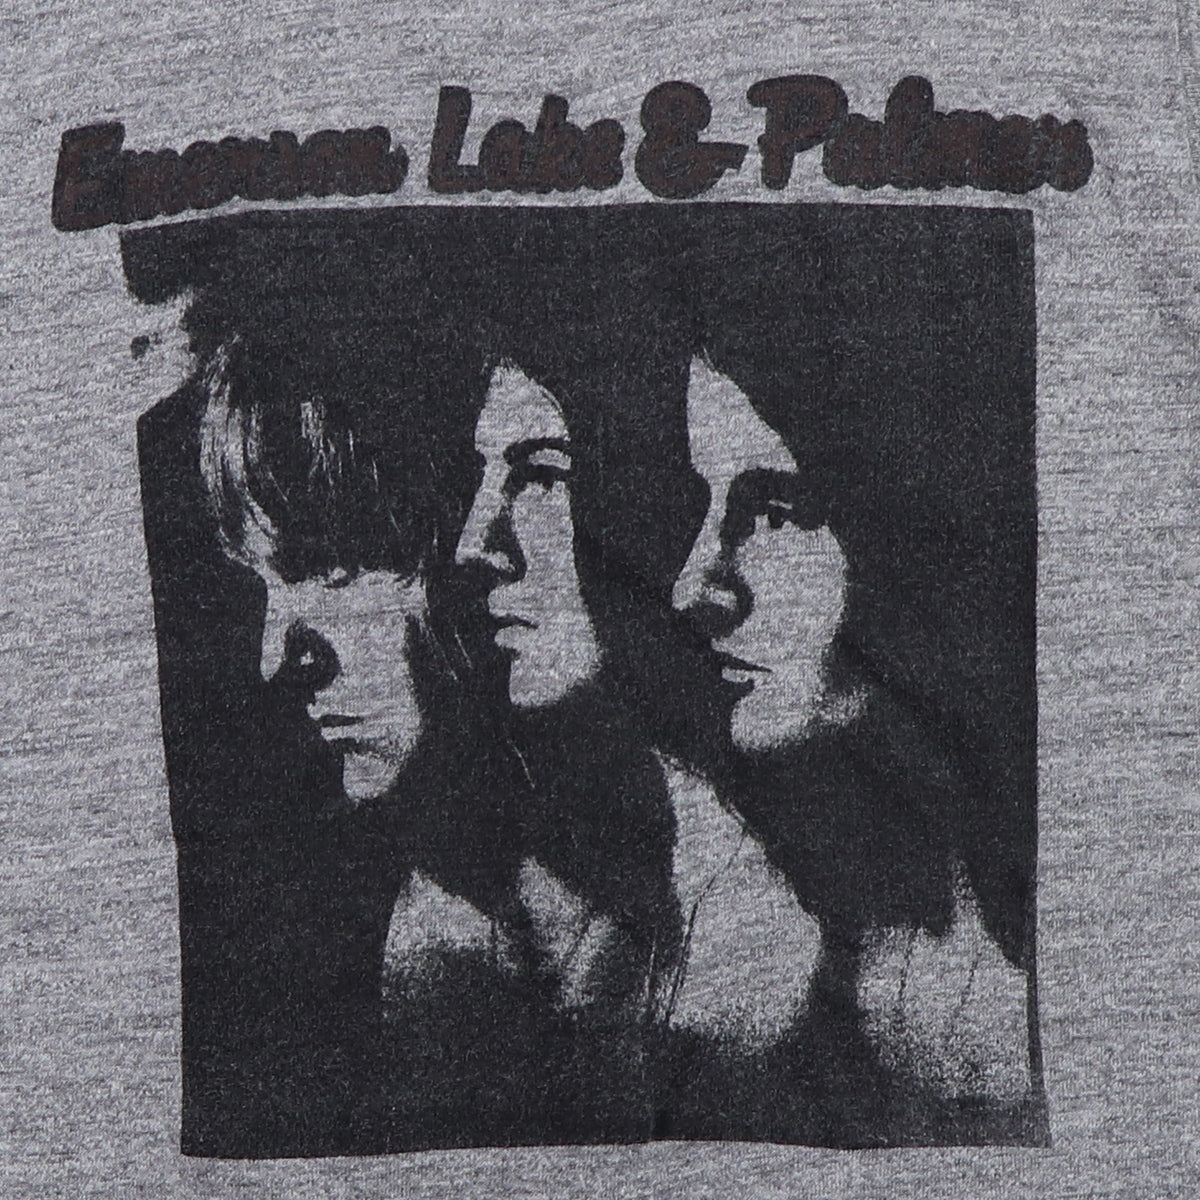 1970s Emerson Lake & Palmer Shirt